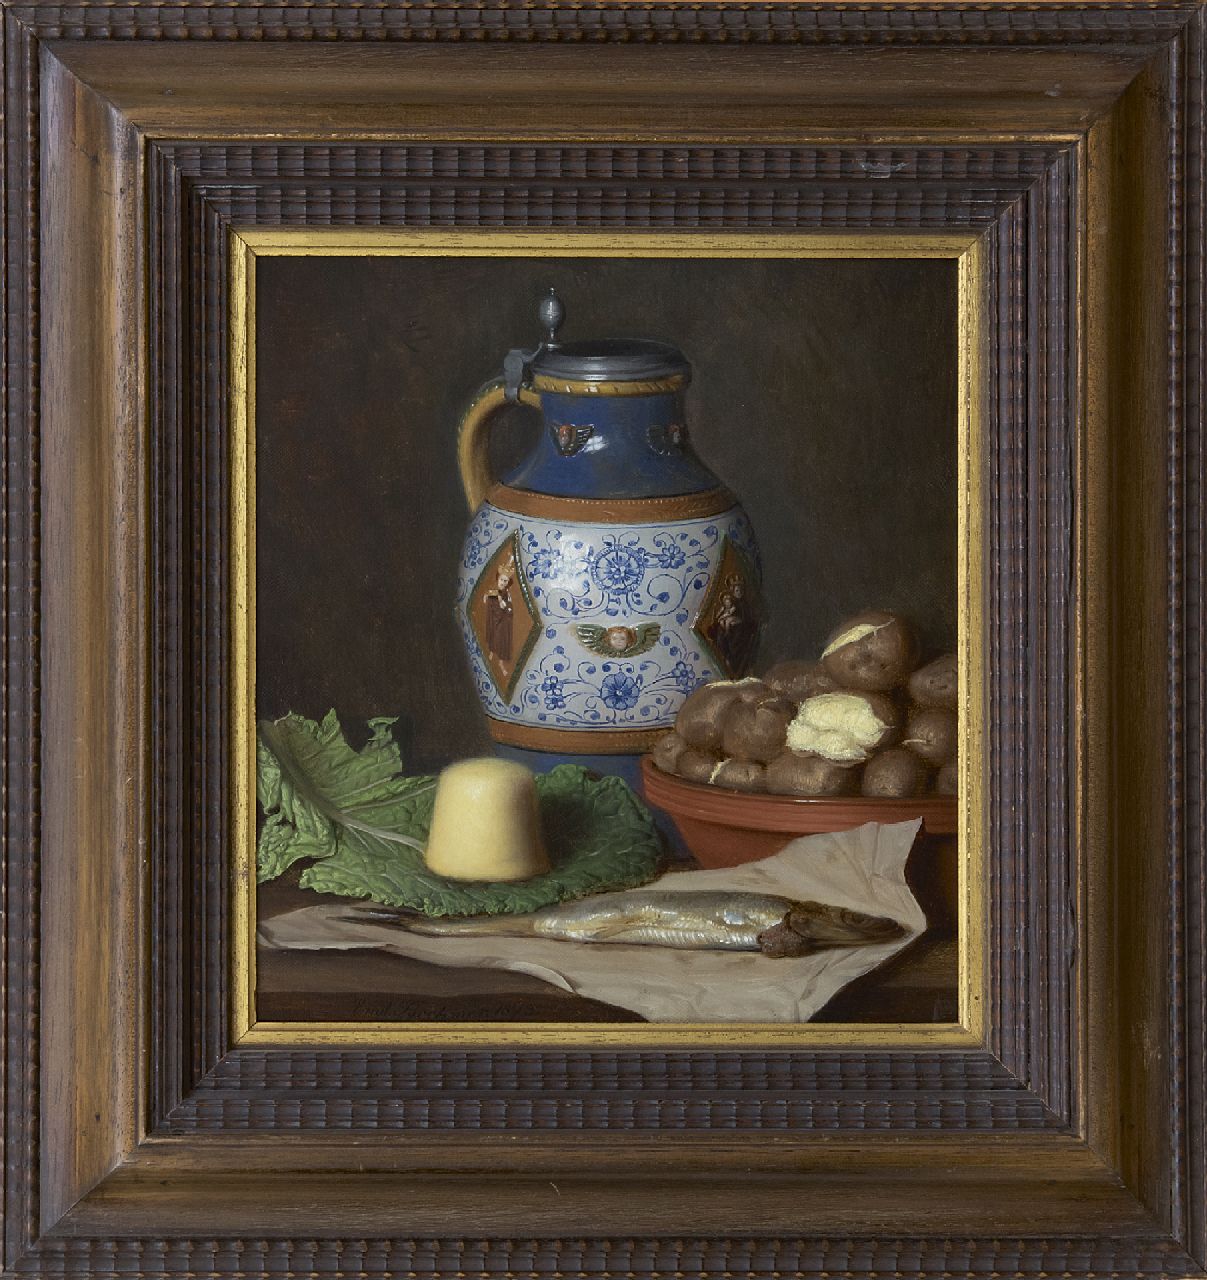 Brehmer E.  | Emil Brehmer | Schilderijen te koop aangeboden | Keukenstilleven, olieverf op doek 31,0 x 28,4 cm, gesigneerd linksonder en gedateerd 1873